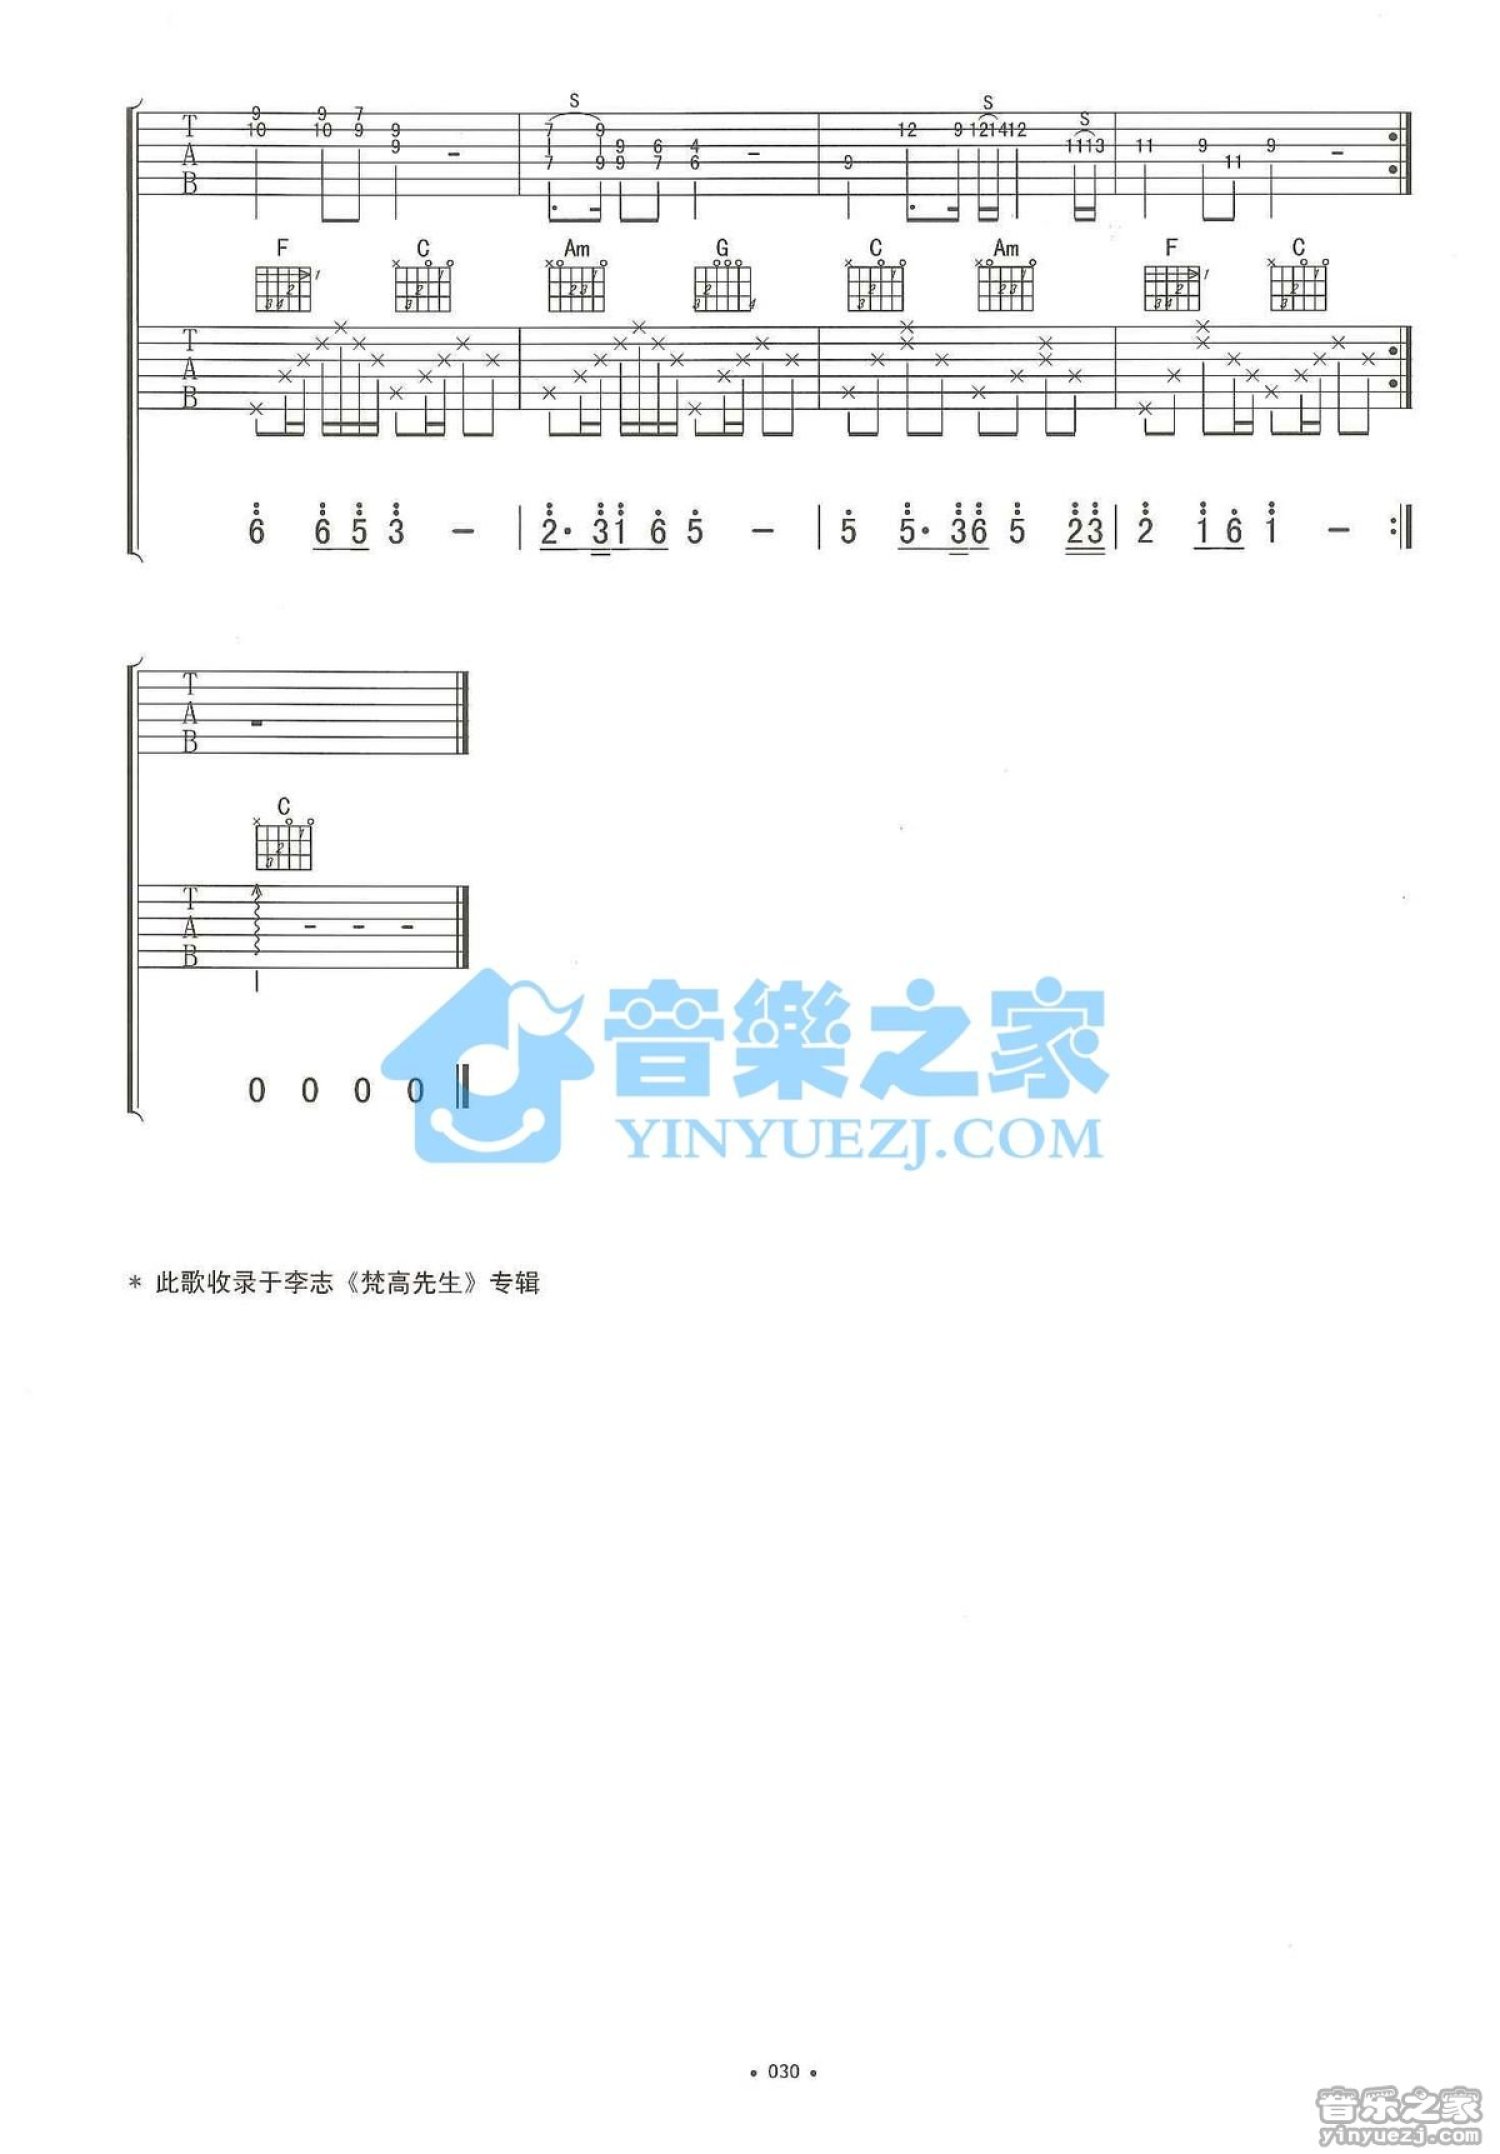 你离开了南京从此没有人和我说话五线谱预览1-钢琴谱文件（五线谱、双手简谱、数字谱、Midi、PDF）免费下载